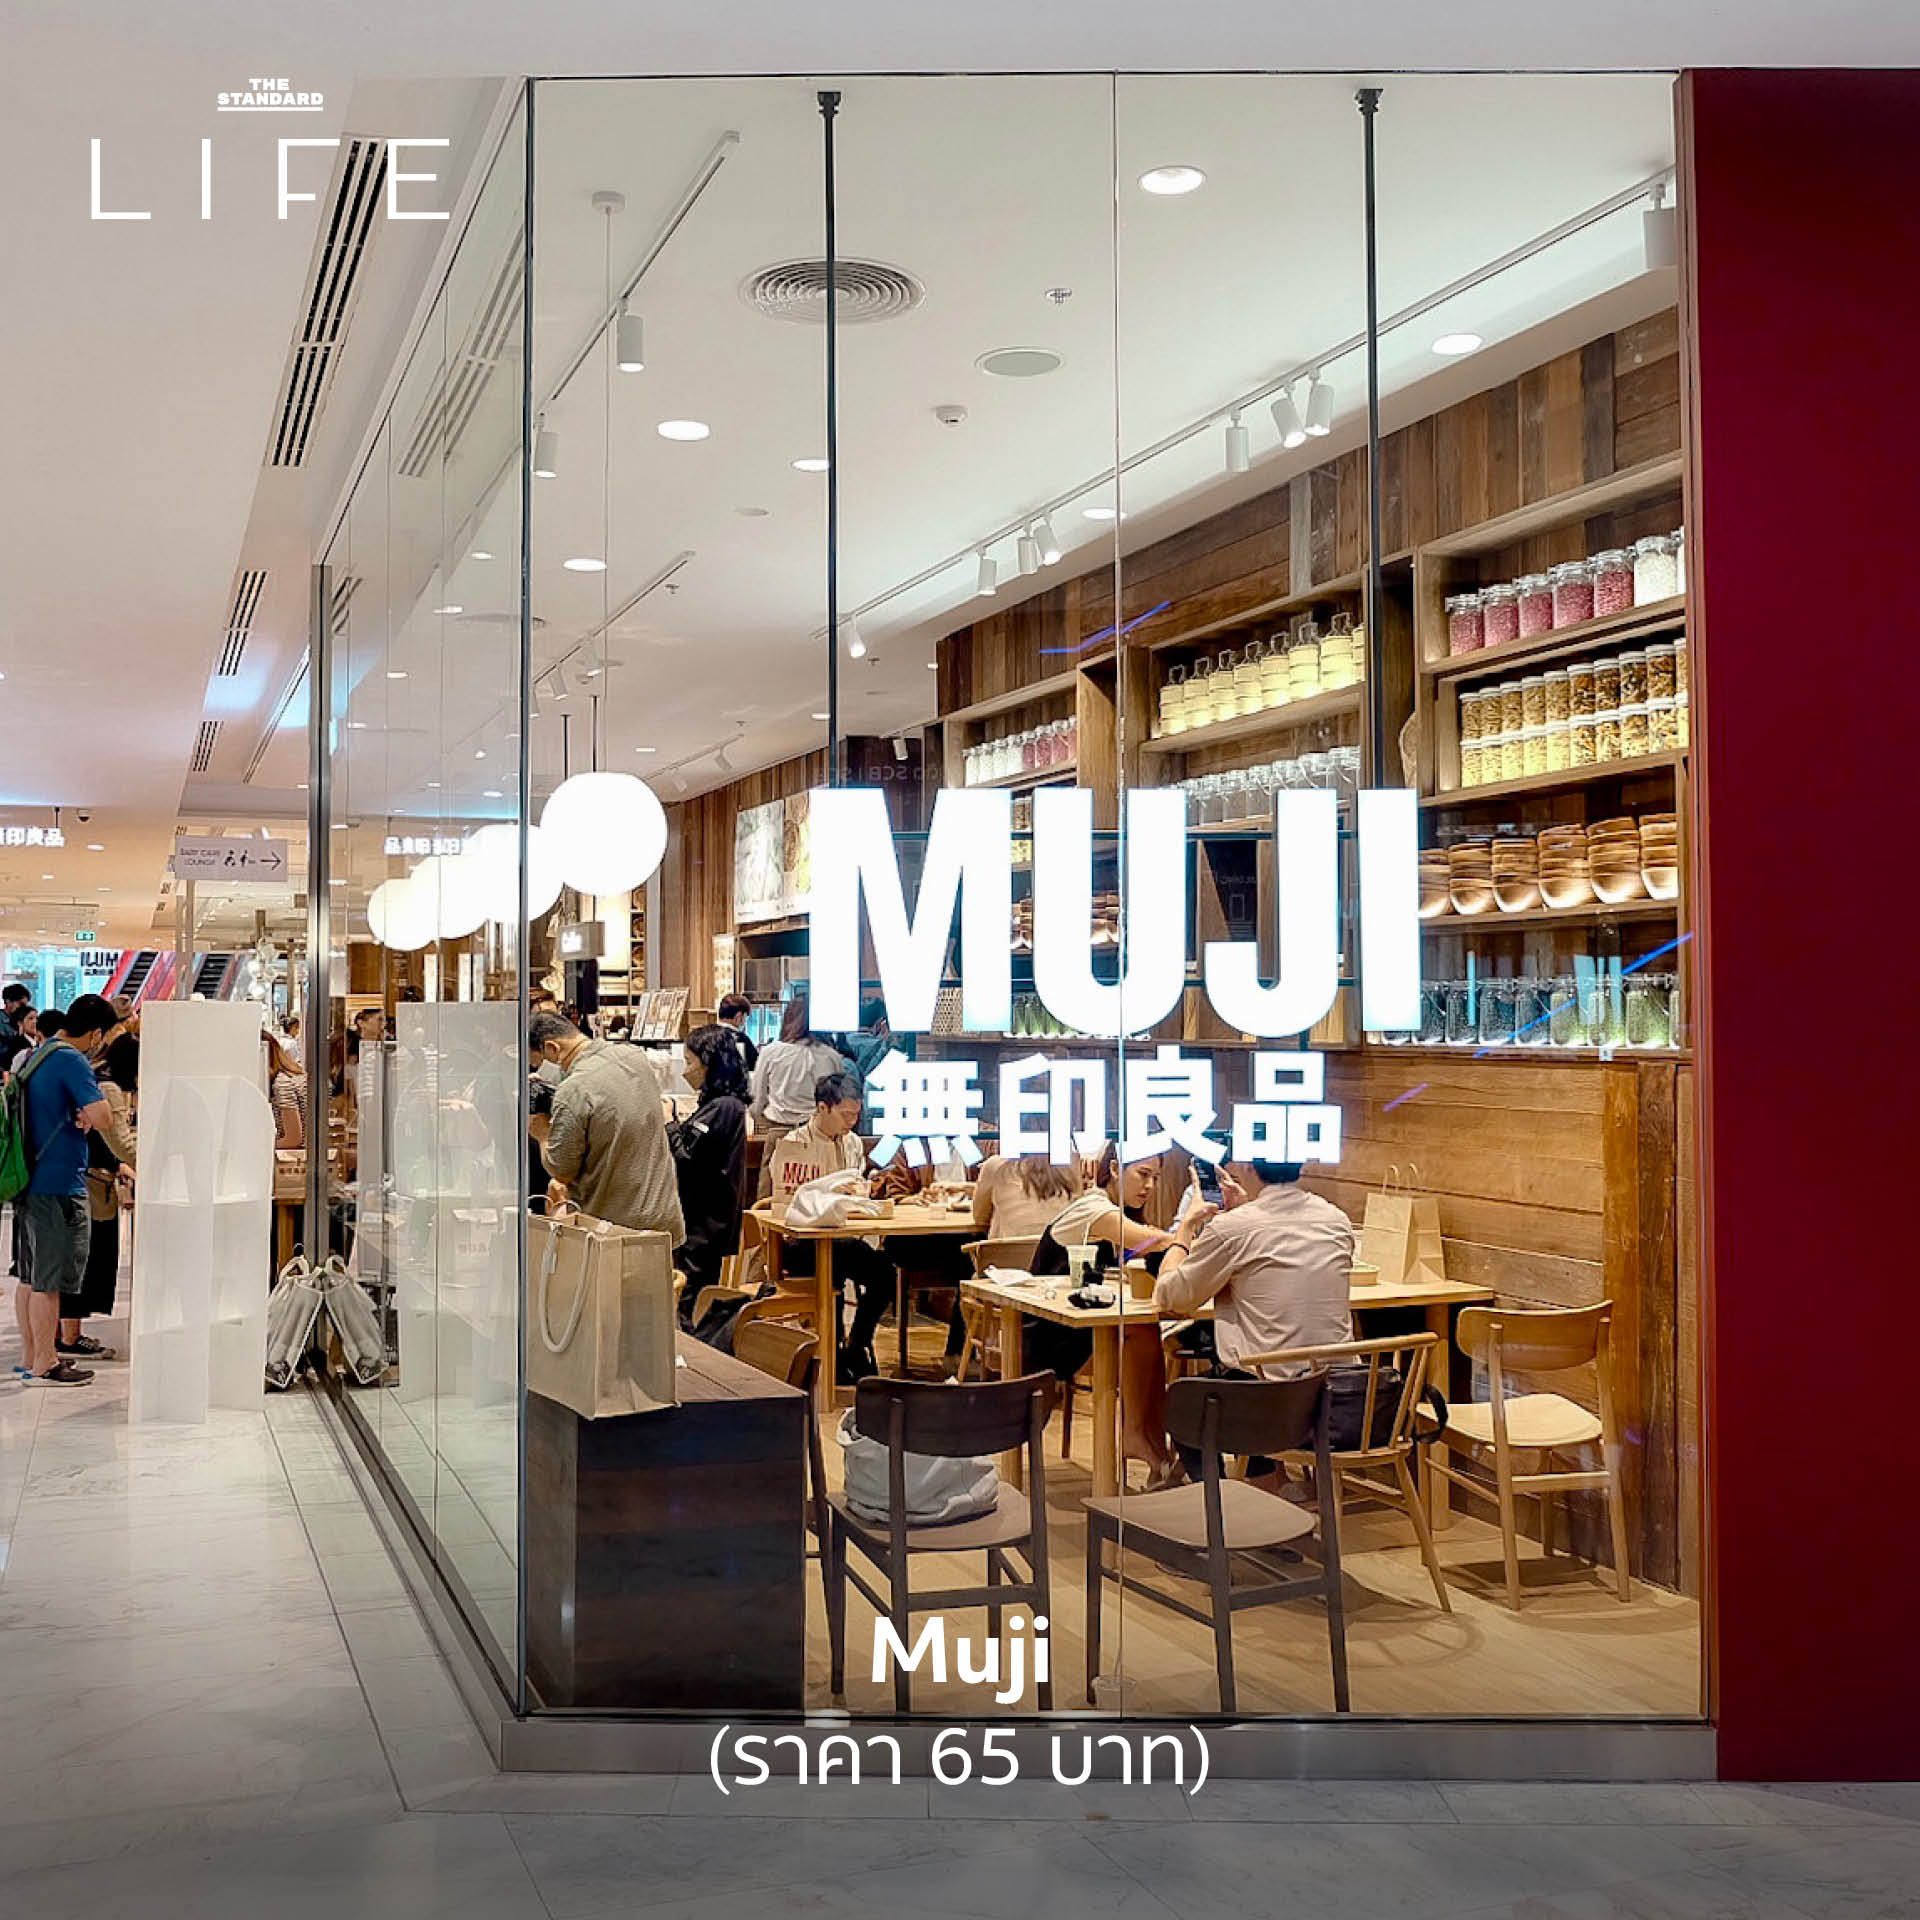 หน้าร้าน Muji Cafe